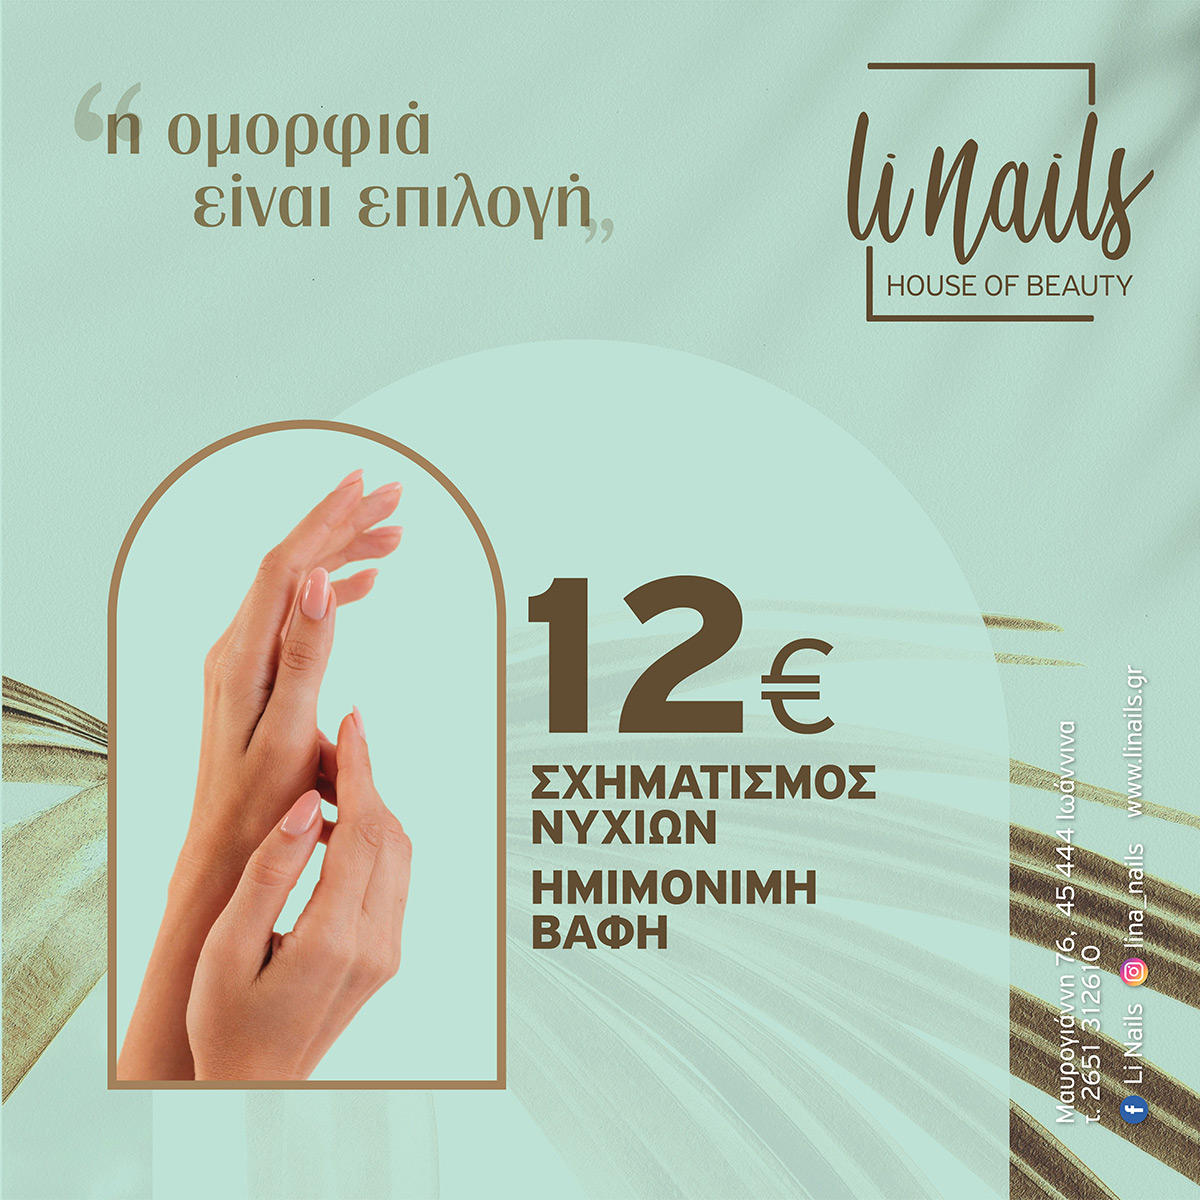 Li Nails - Hyaluronic Offer